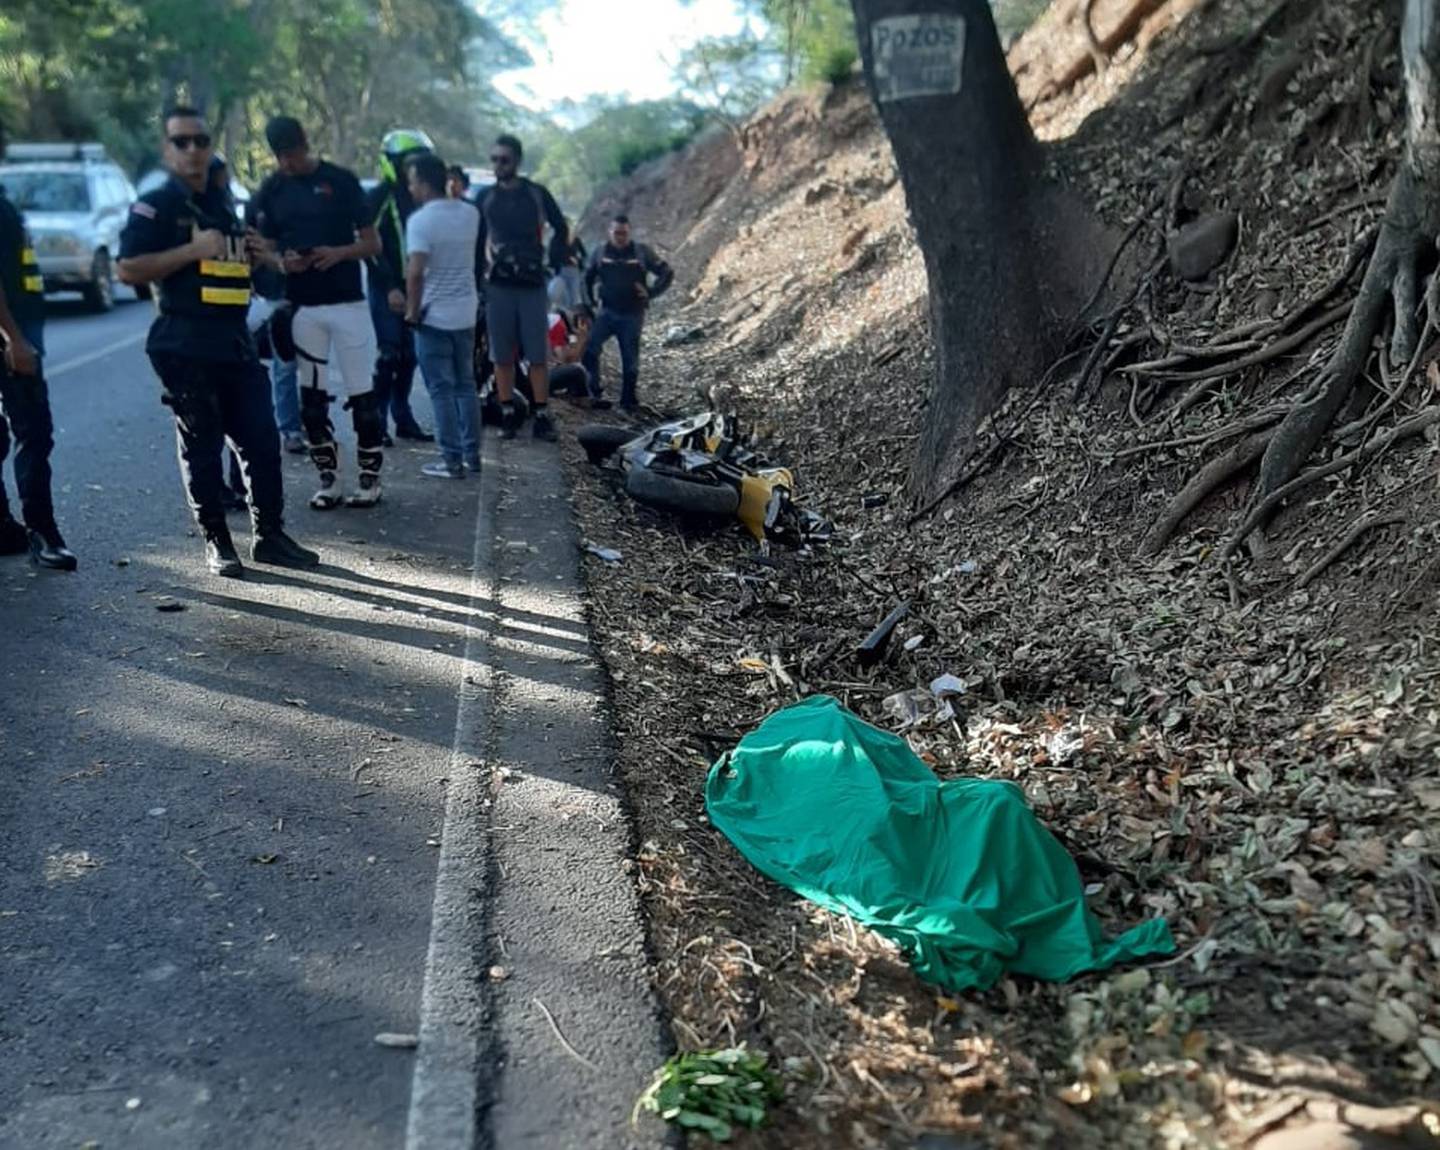 Abigail Prado, joven motociclista que falleció al chocar contra un árbol en Guanacaste. Foto cortesía.